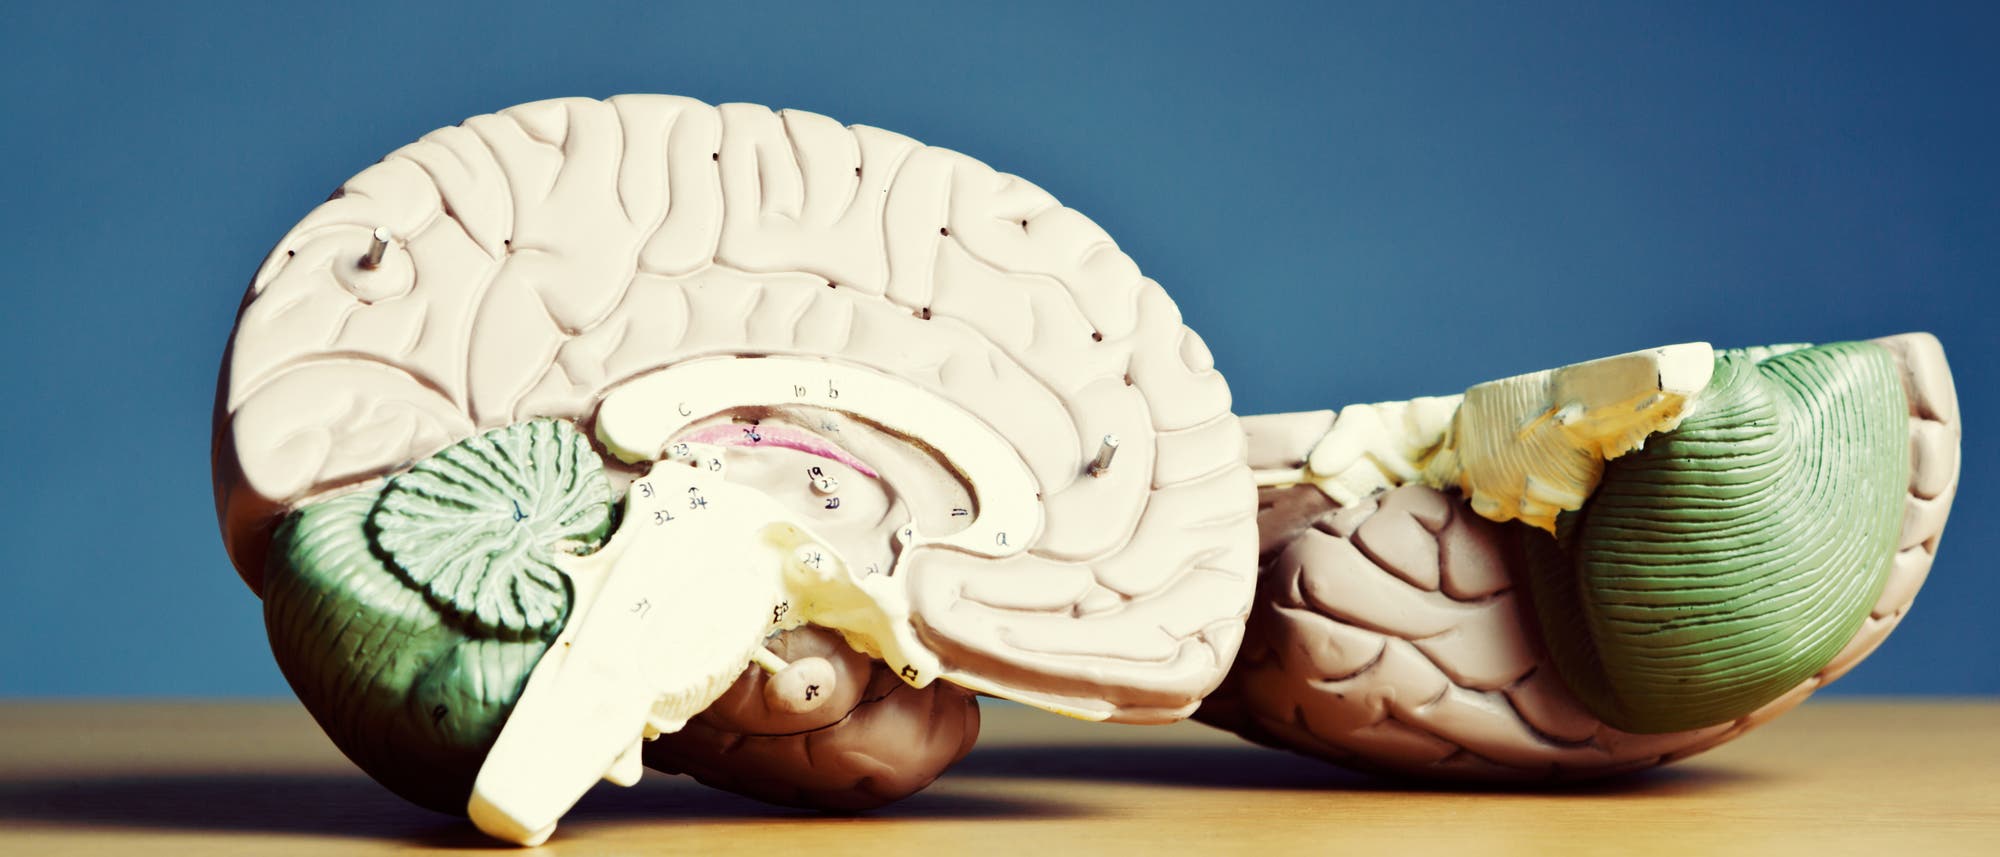 Modell eines menschlichen Gehirns - der Hippocampus ist die bogenförmige Struktur in der Mitte